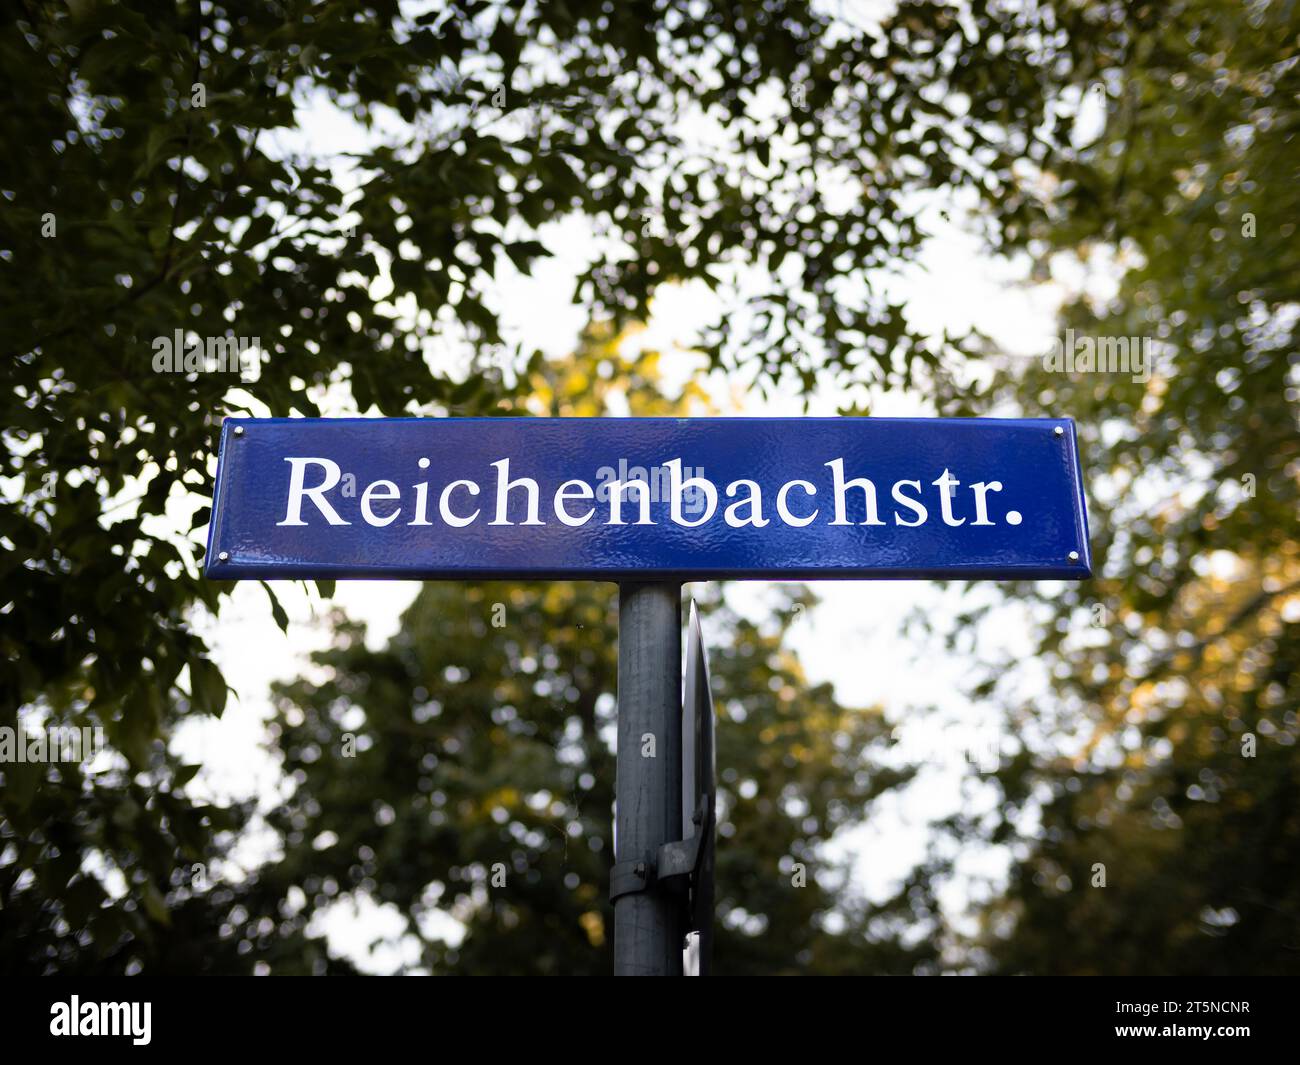 Reichenbachstr. Primo piano del cartello con il nome della strada in Germania. Le lettere bianche delle informazioni stradali sono su una piastra di metallo blu. Dietro c'è una vegetazione lussureggiante. Foto Stock